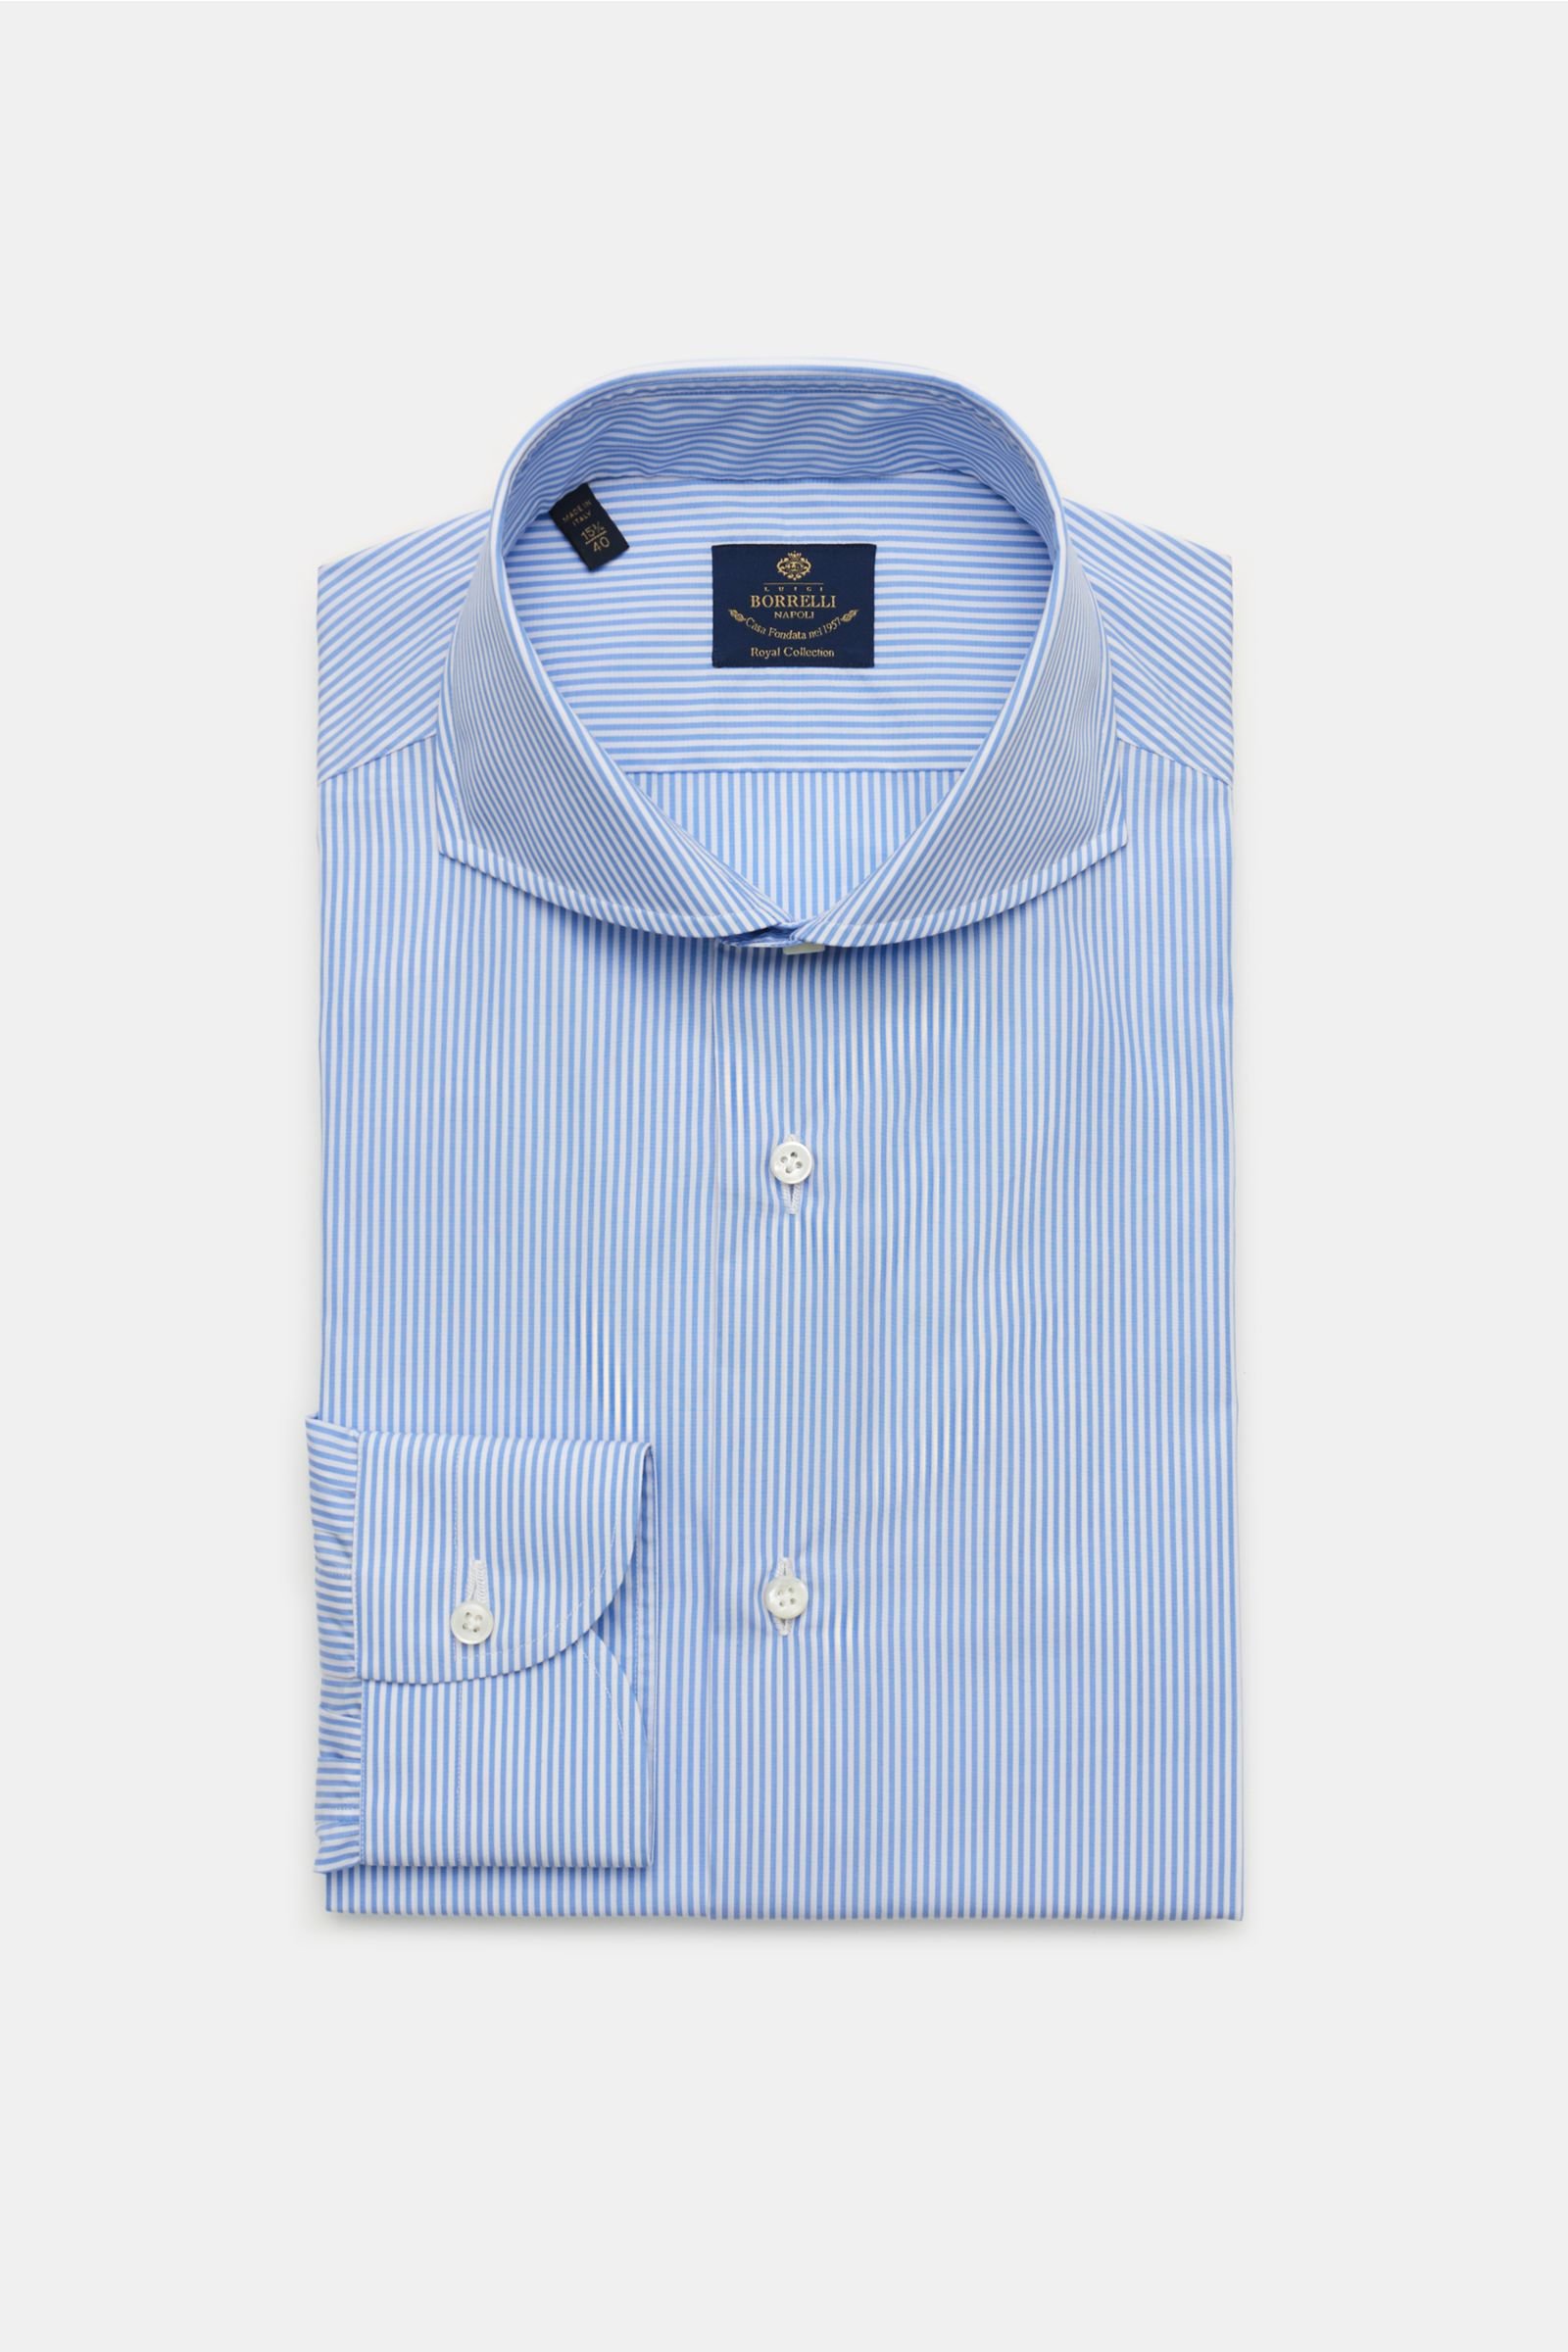 Business shirt 'Sandro' shark collar light blue/white striped